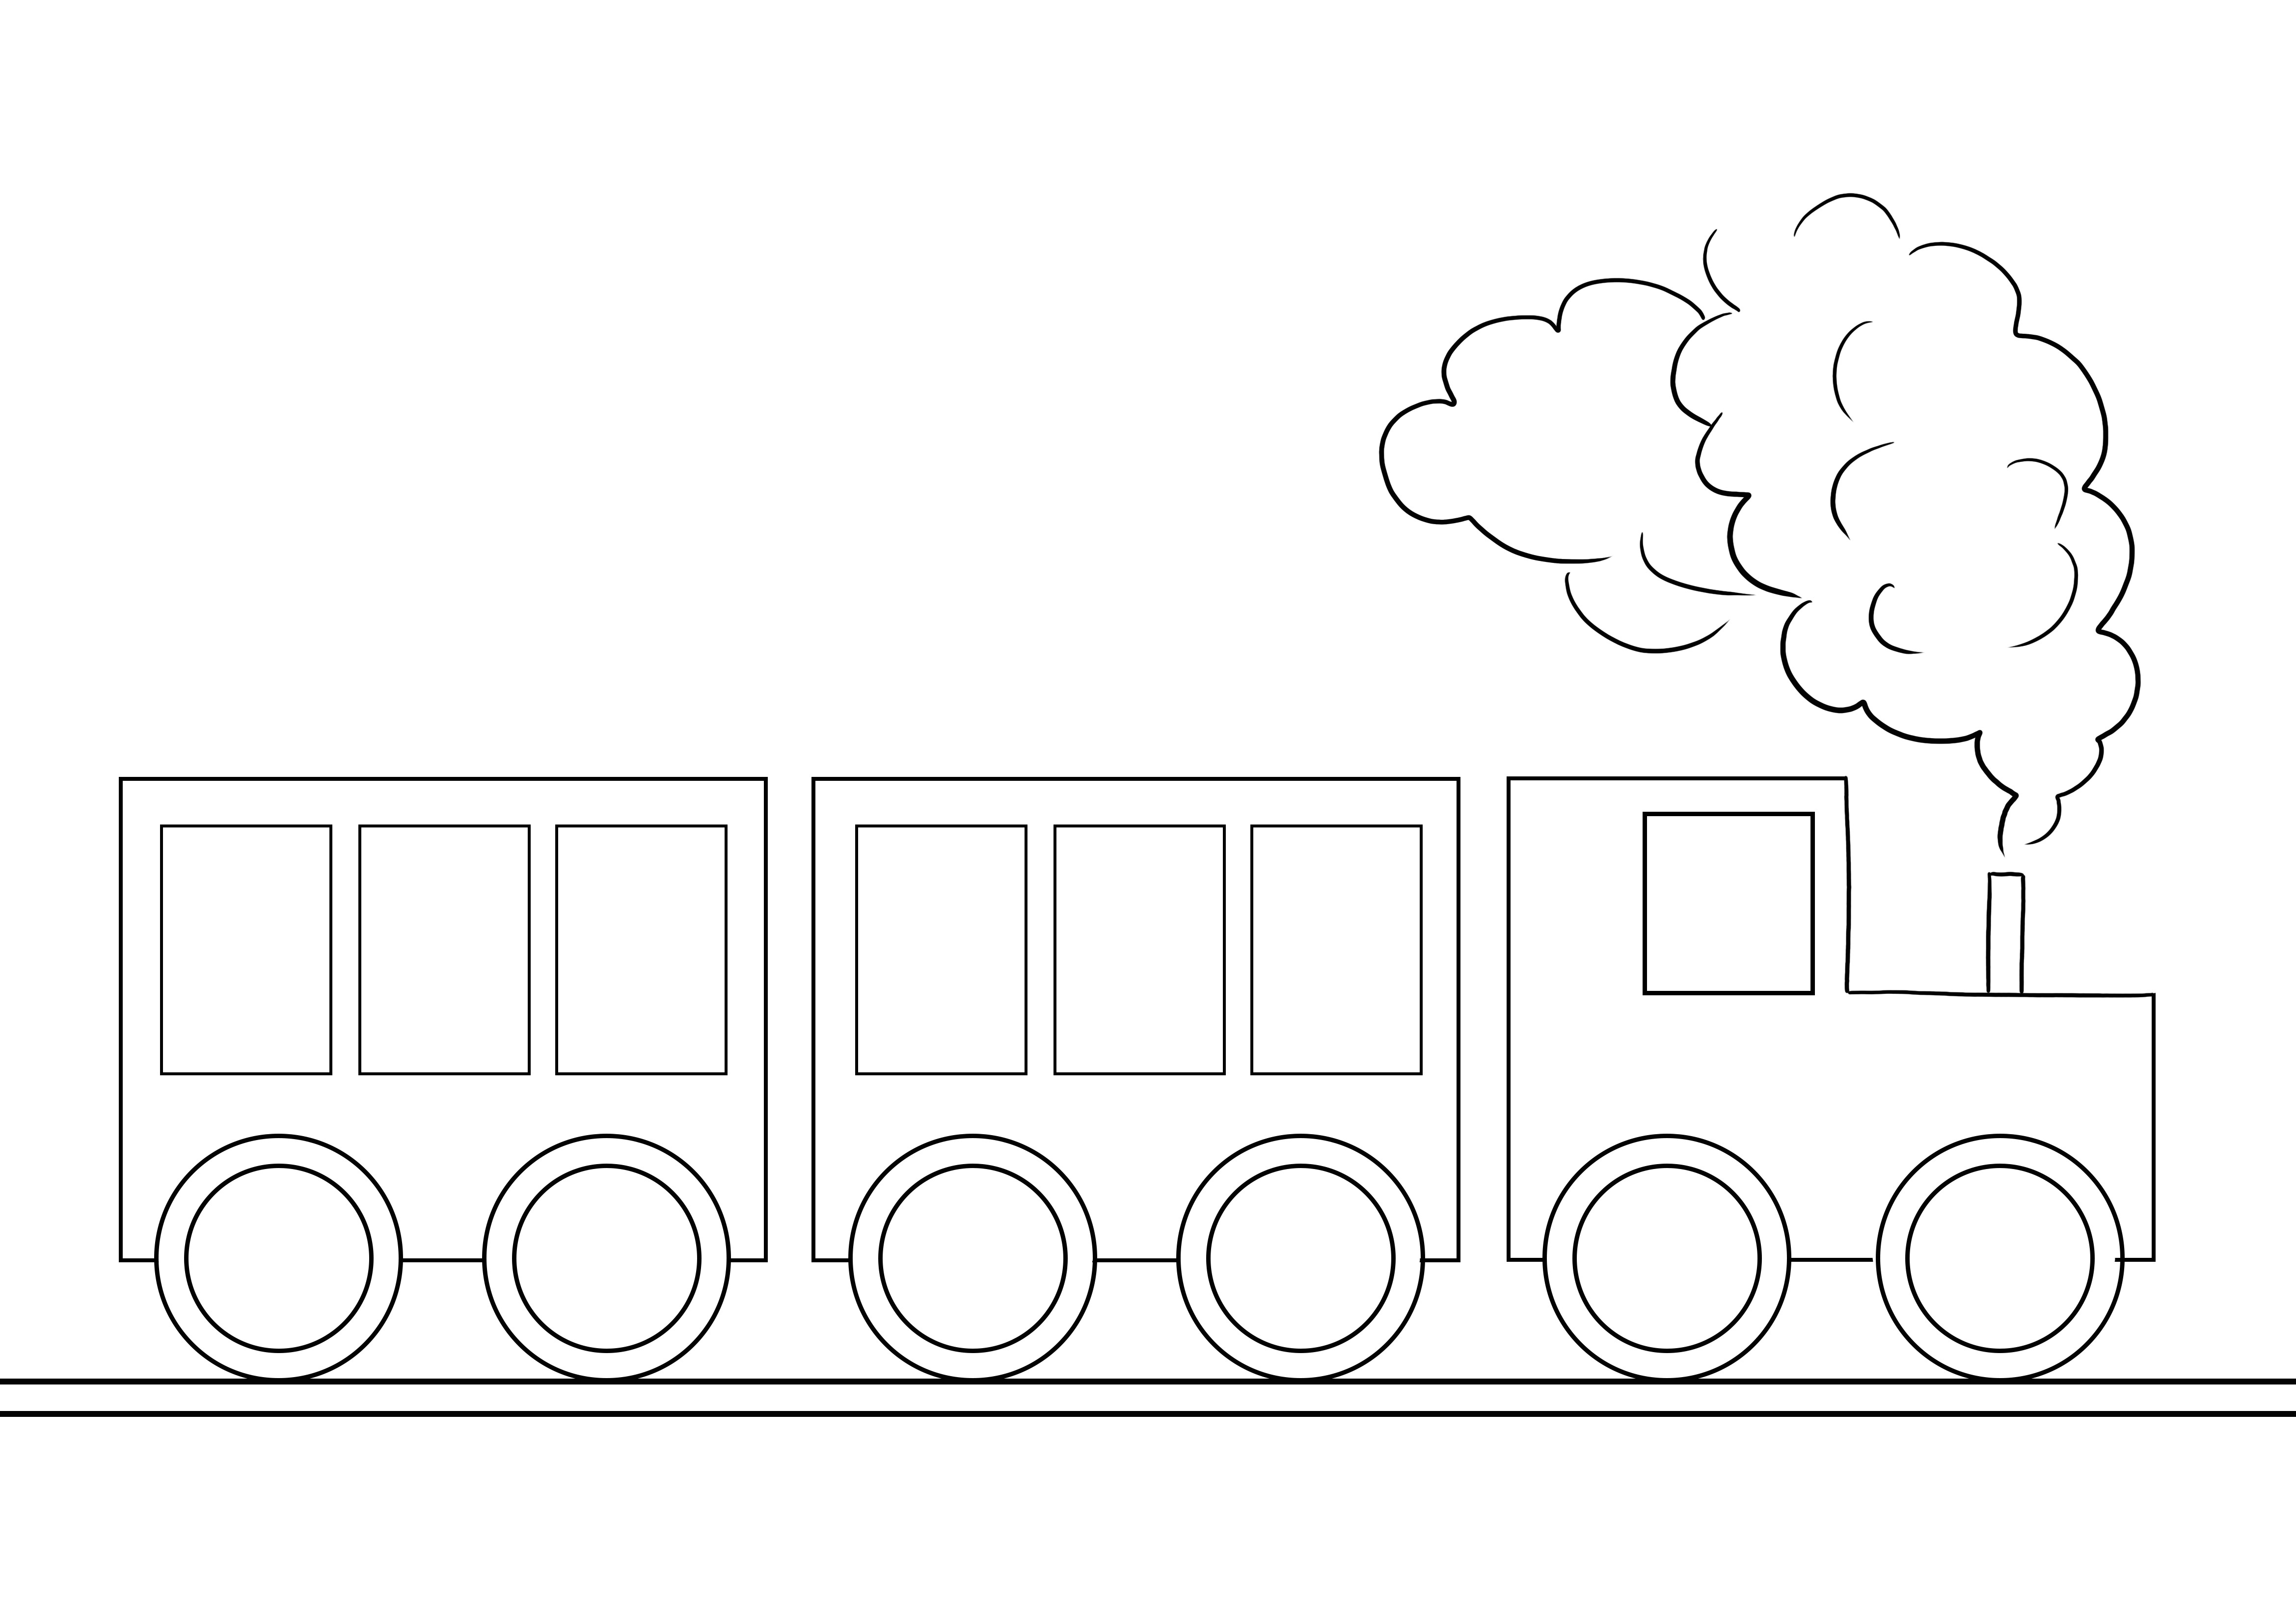 Un'immagine da colorare molto semplice di un treno da stampare o scaricare gratuitamente